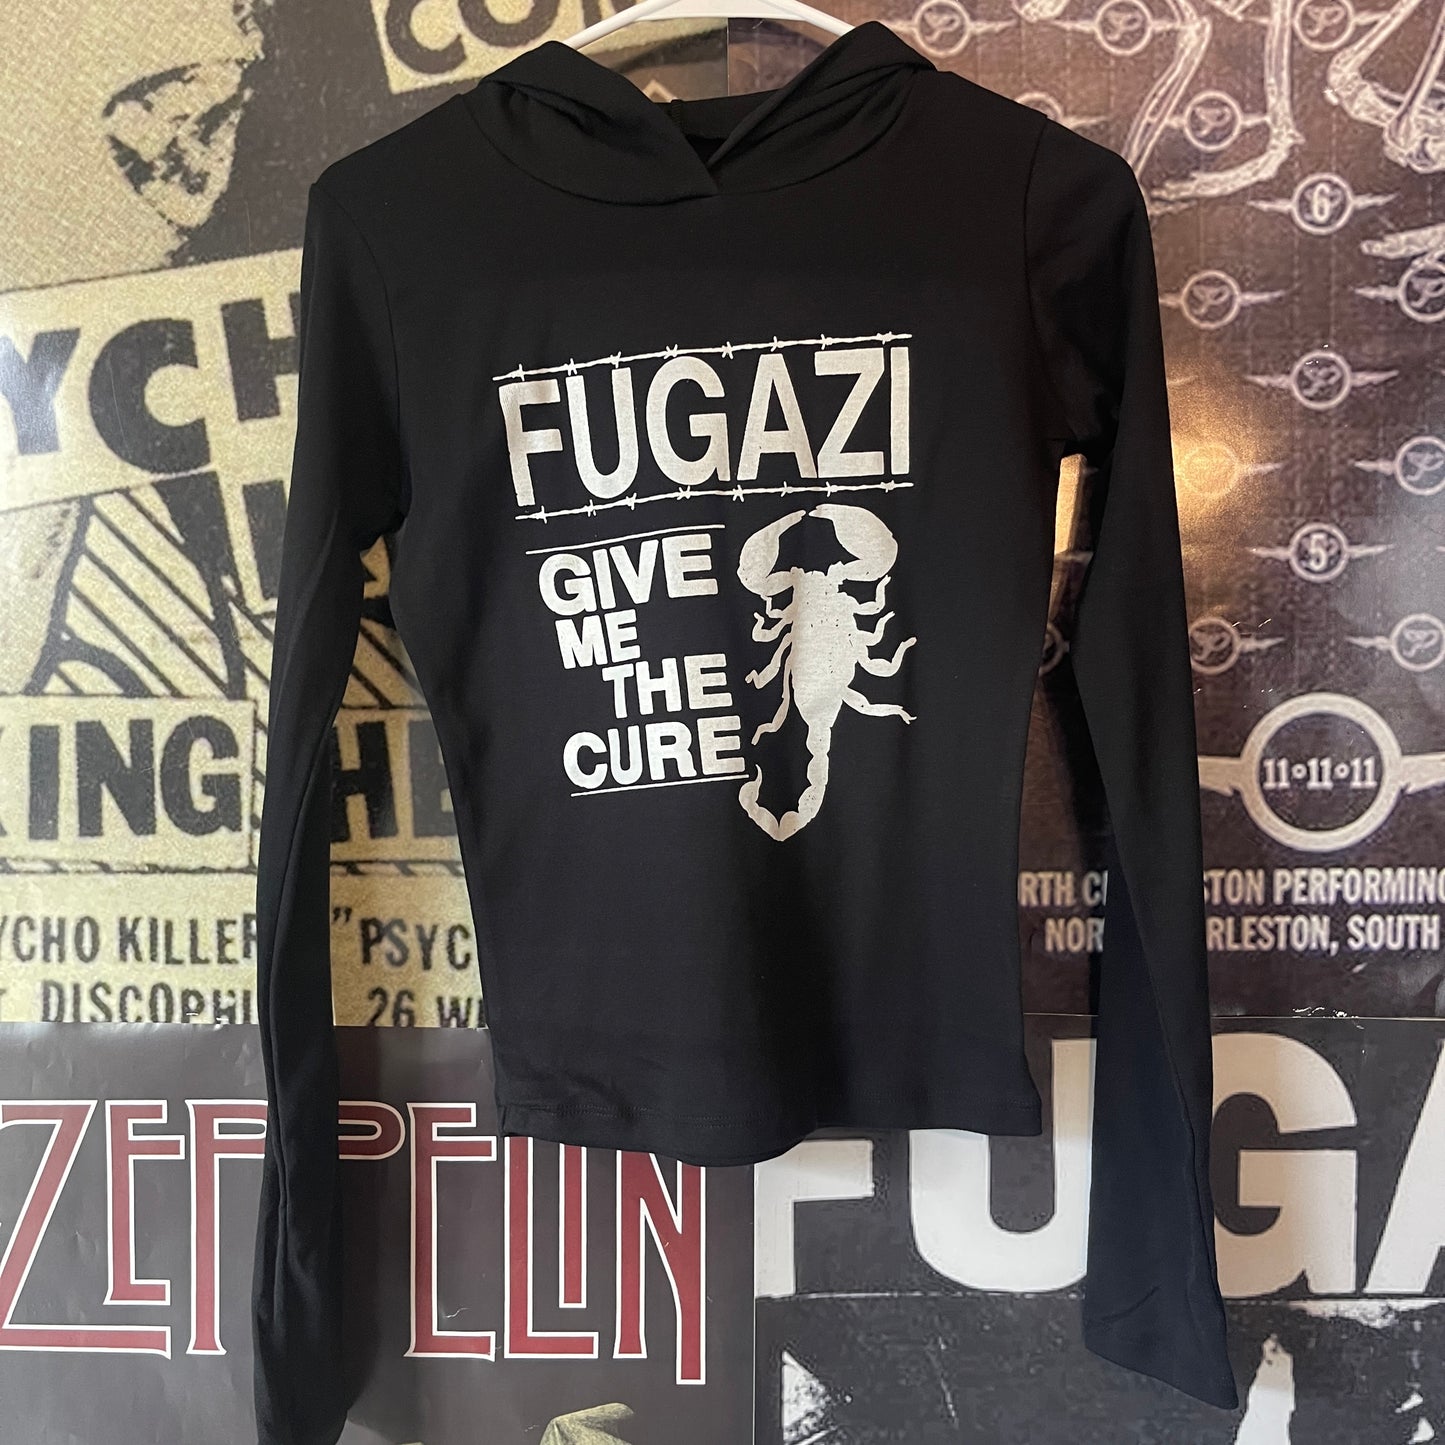 Fugazi black hooded baby style long sleeve SM/MED